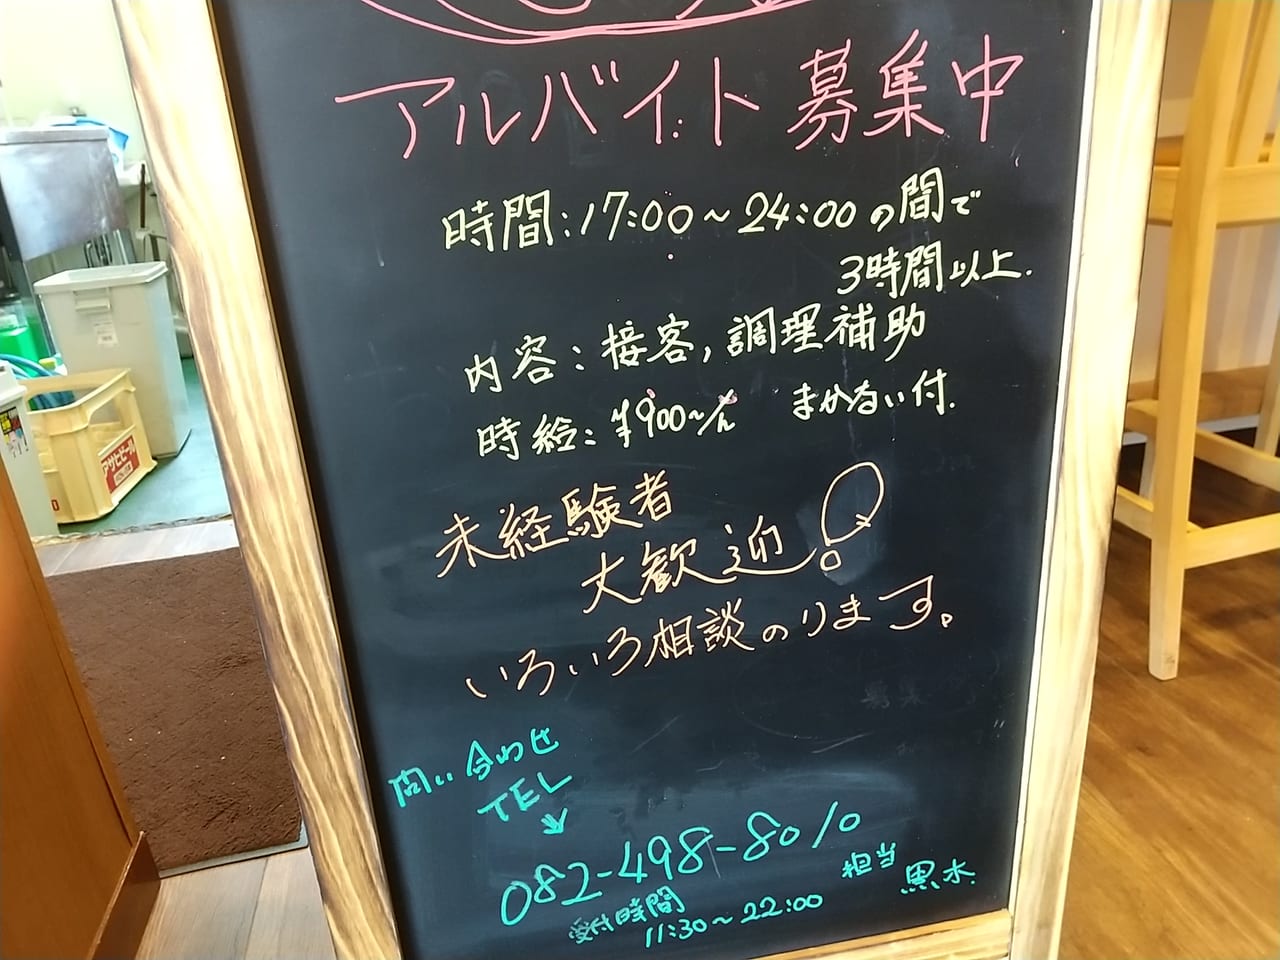 「ろっか」鶏ちゃん(岐阜県の郷土料理)がある居酒屋